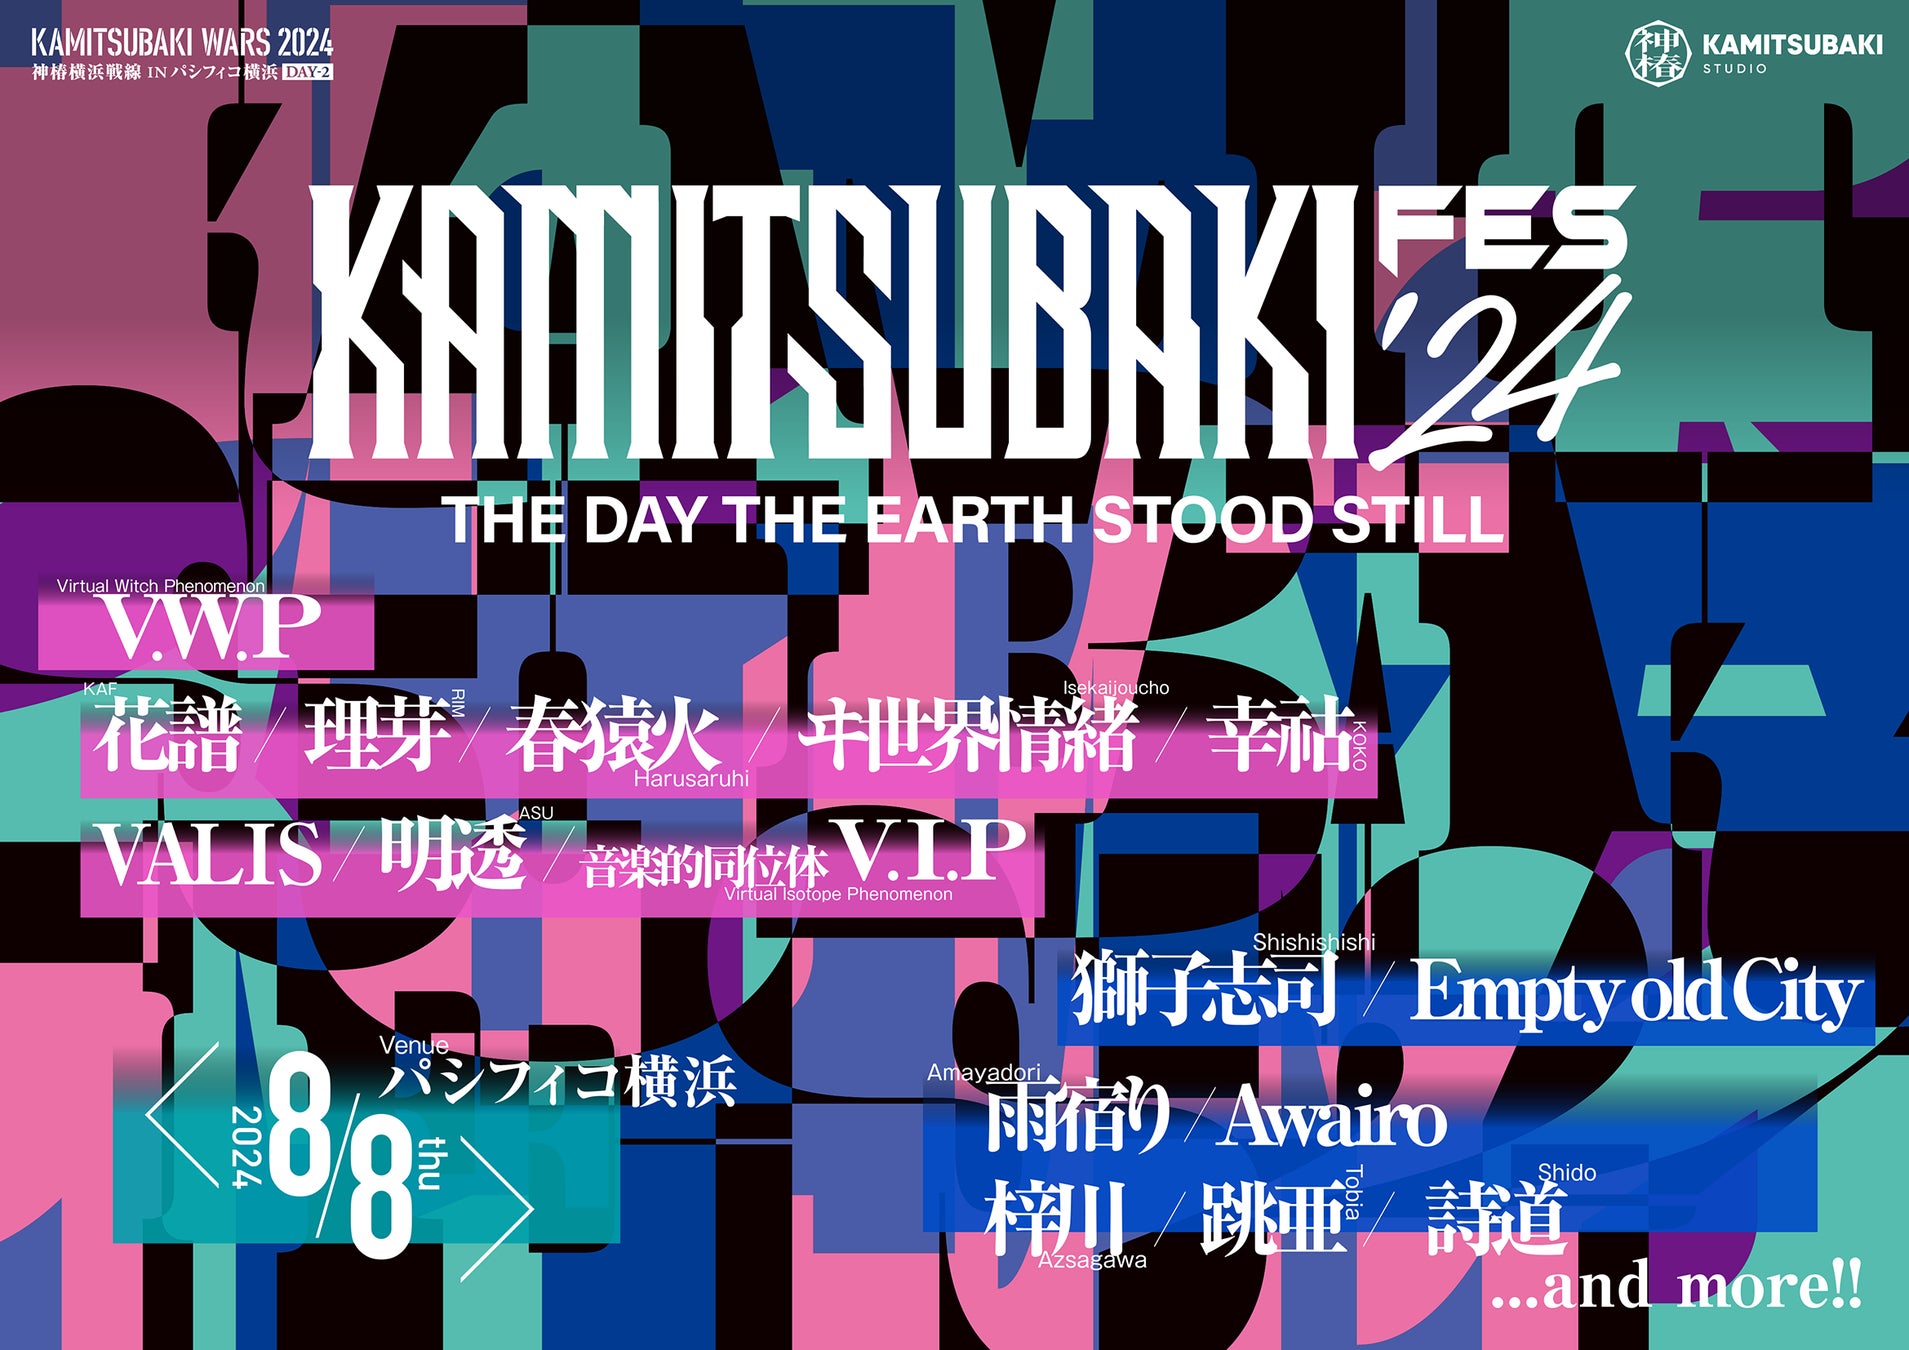 KAMITSUBAKI STUDIOがおくるバーチャルとリアルの垣根を超えた音楽フェス「KAMITSUBAKI FES ’24」開催決定！